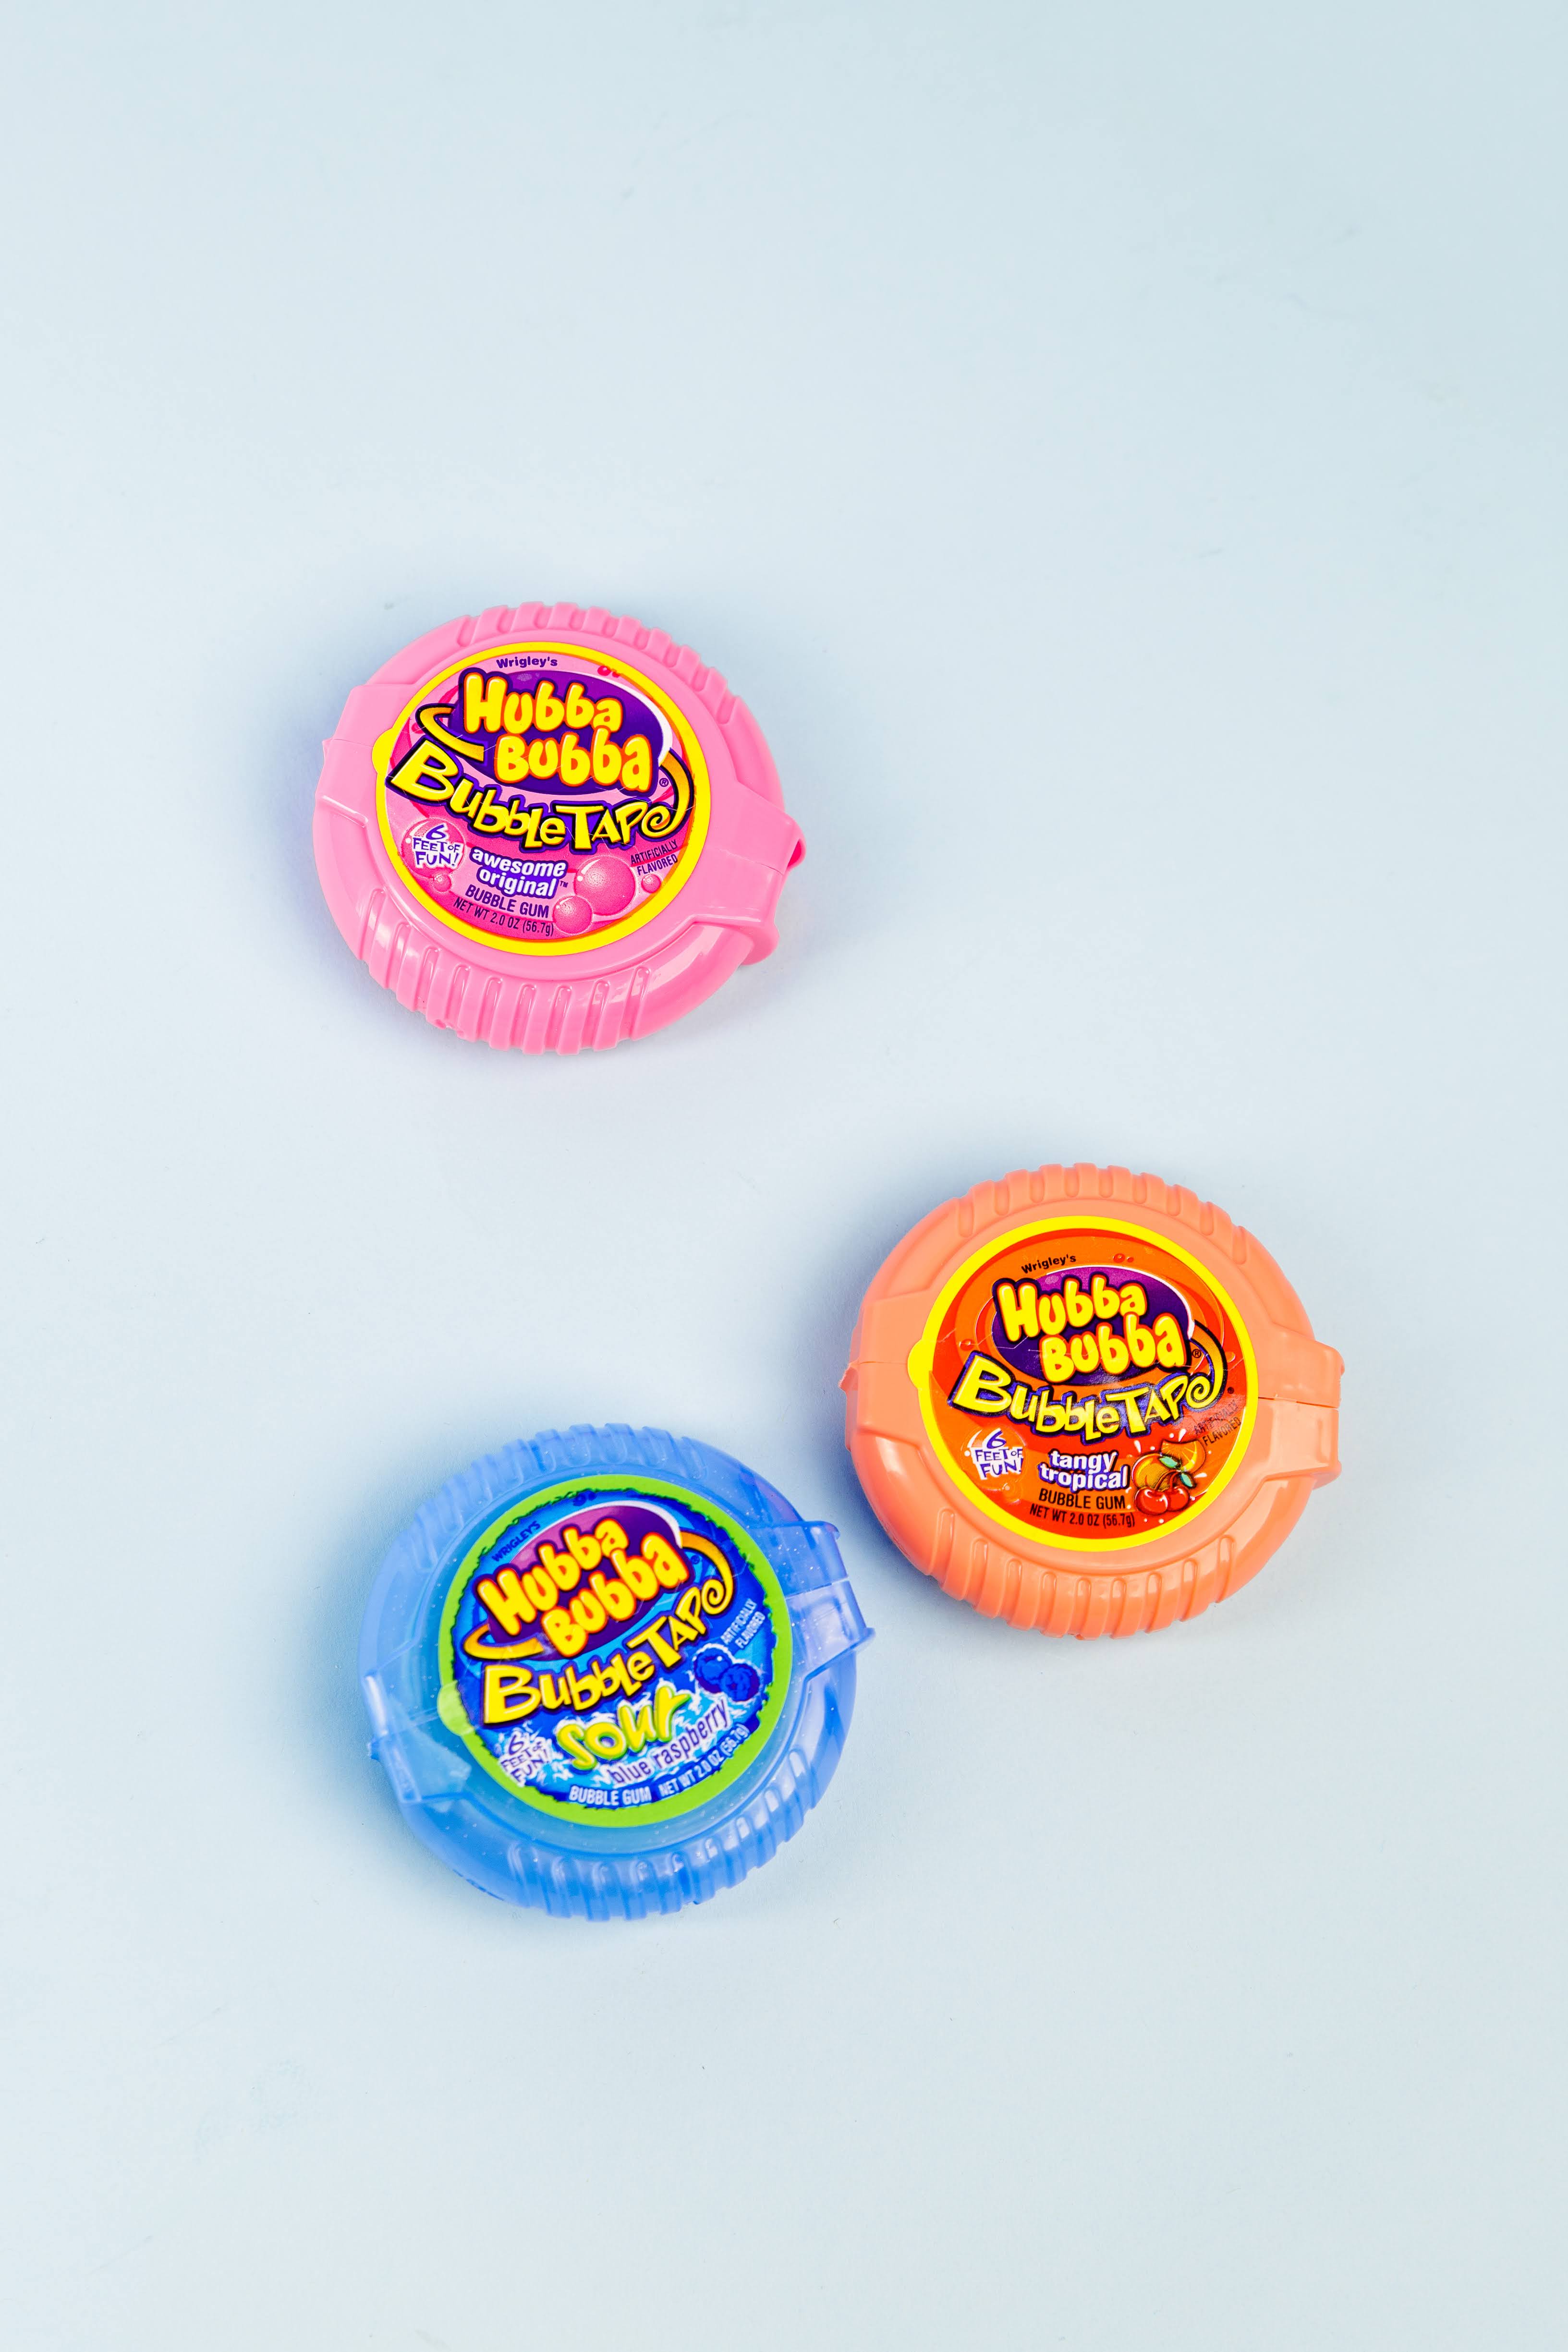 Hubba Bubba Bubble Gum